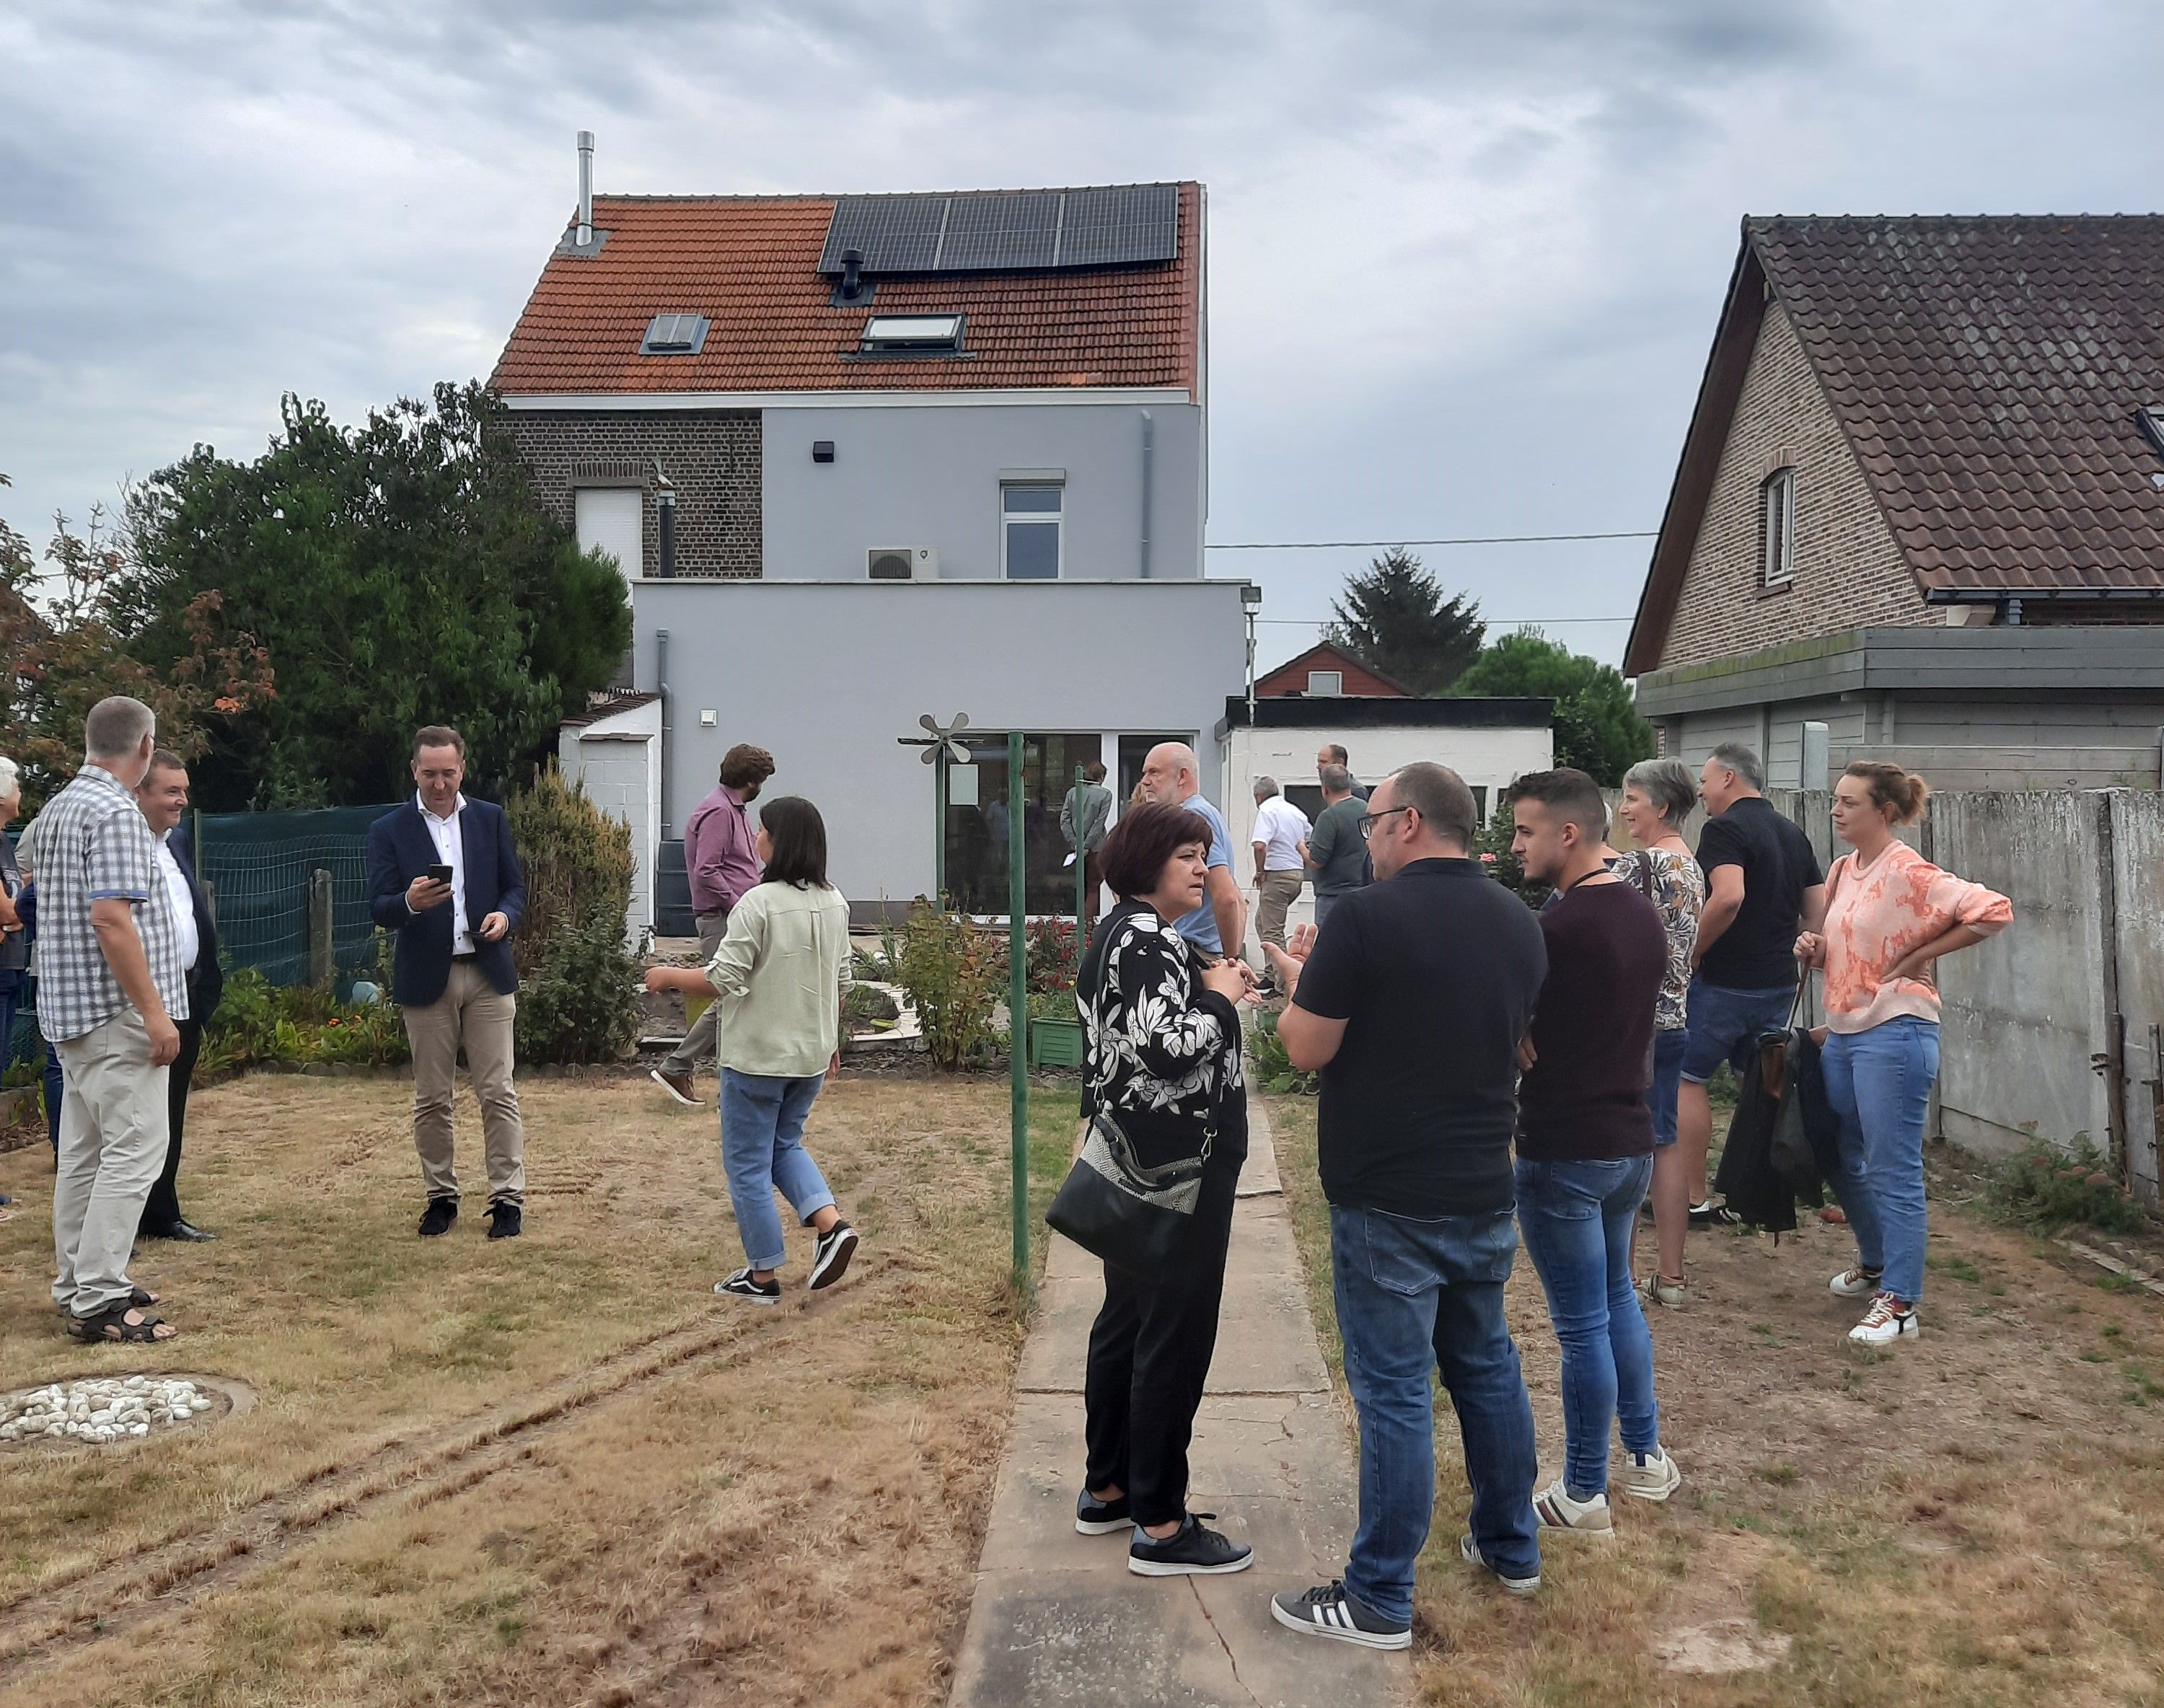 Op 13 september organiseerden Klimaatpunt en 3Wplus een kijkdag in een 'WarmNest'-huis in Sint-Katarina-Lombeek